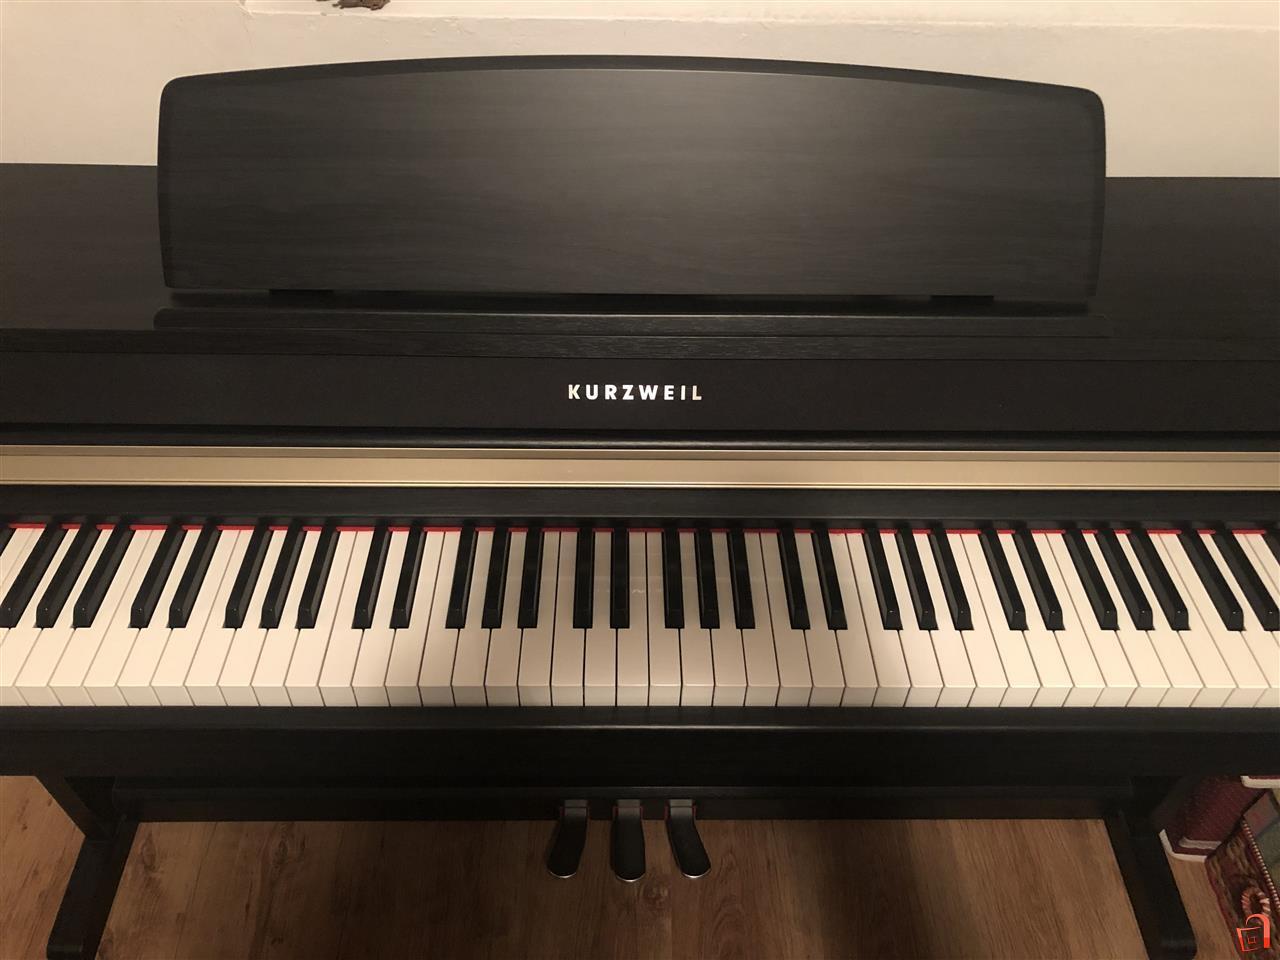 خرید پیانوی دیجیتال کورزویل MP10-F